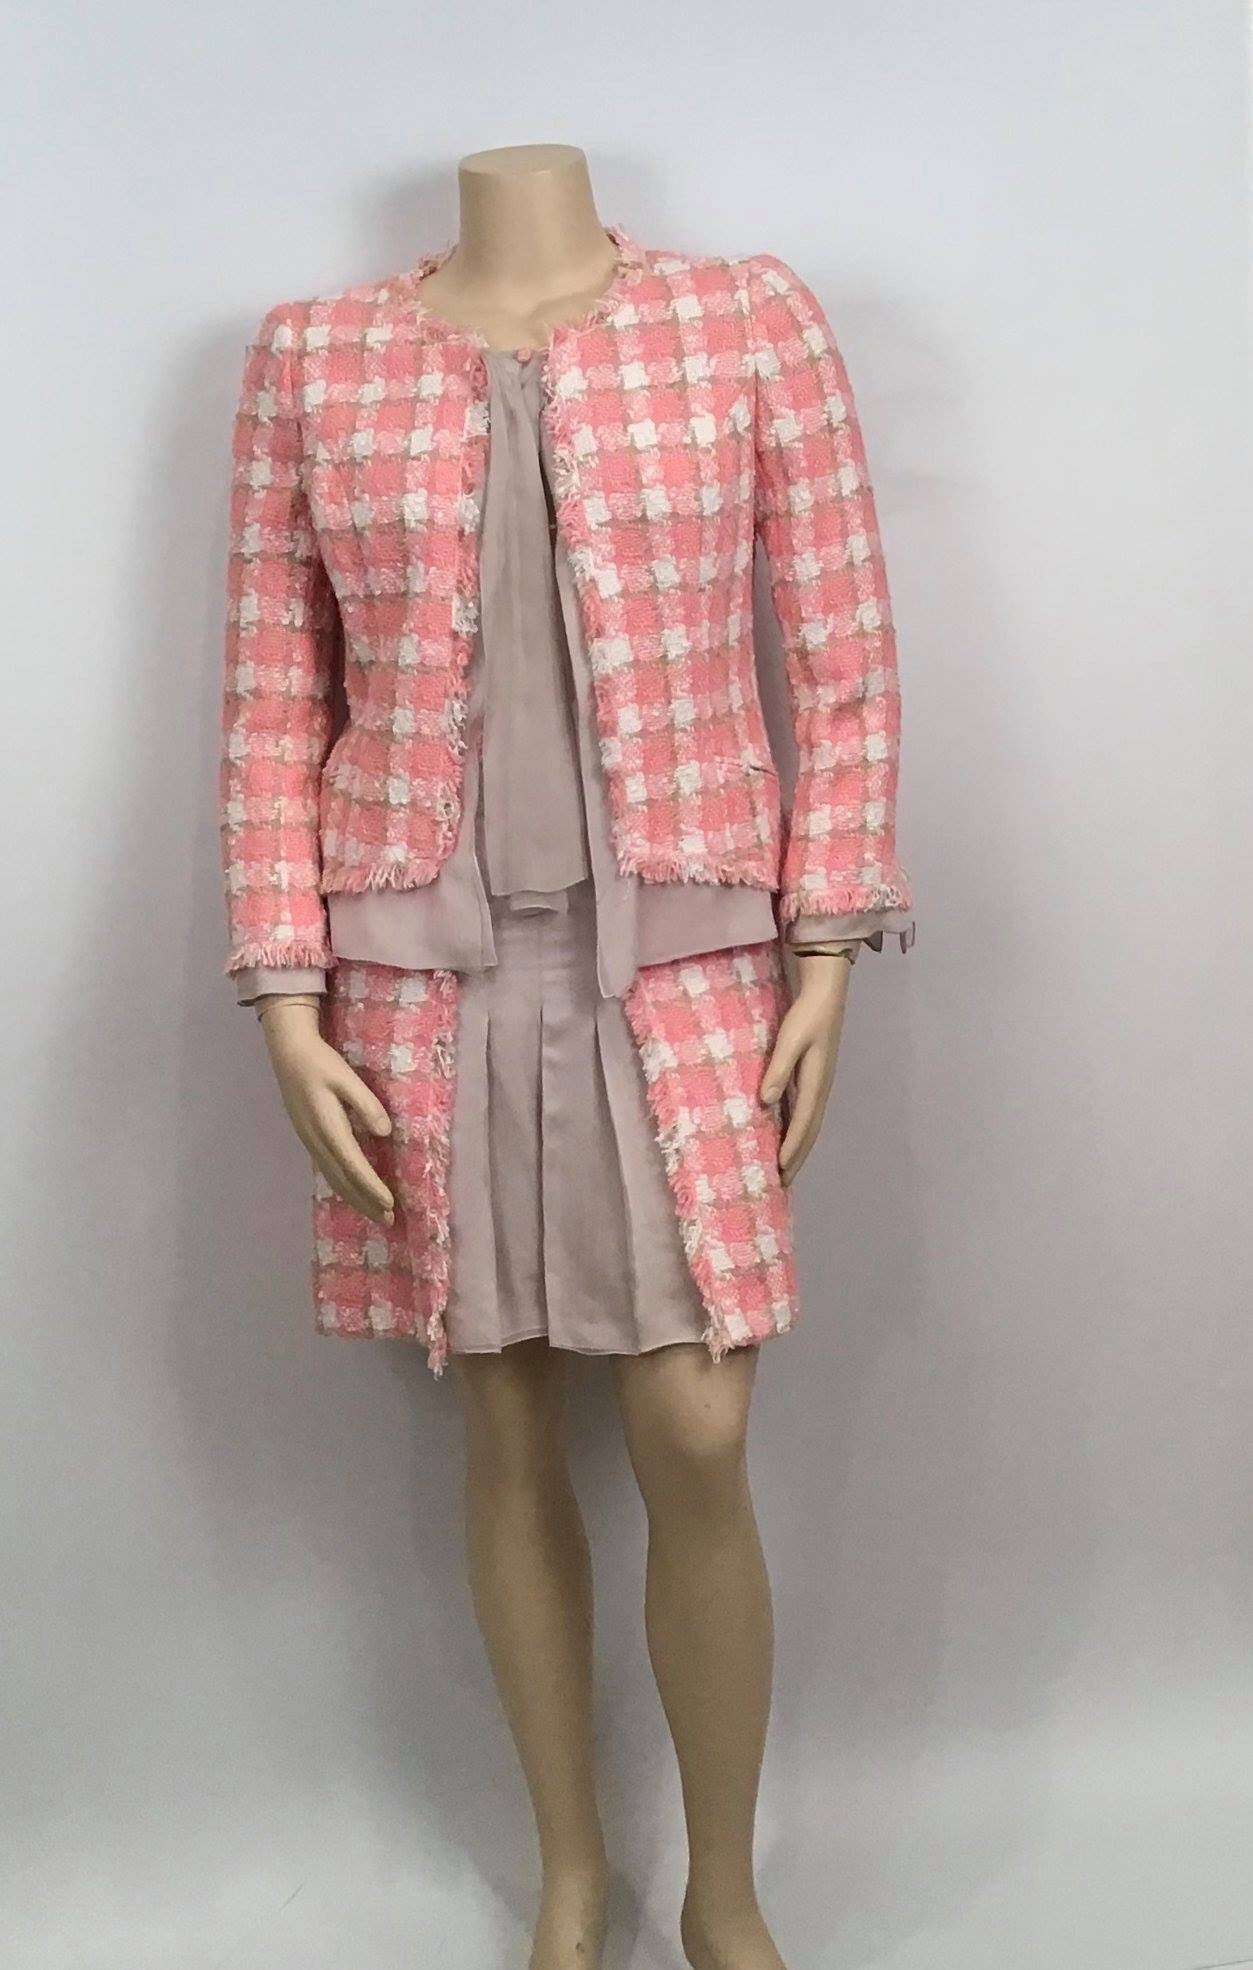 Chanel pink suit skirt - Gem